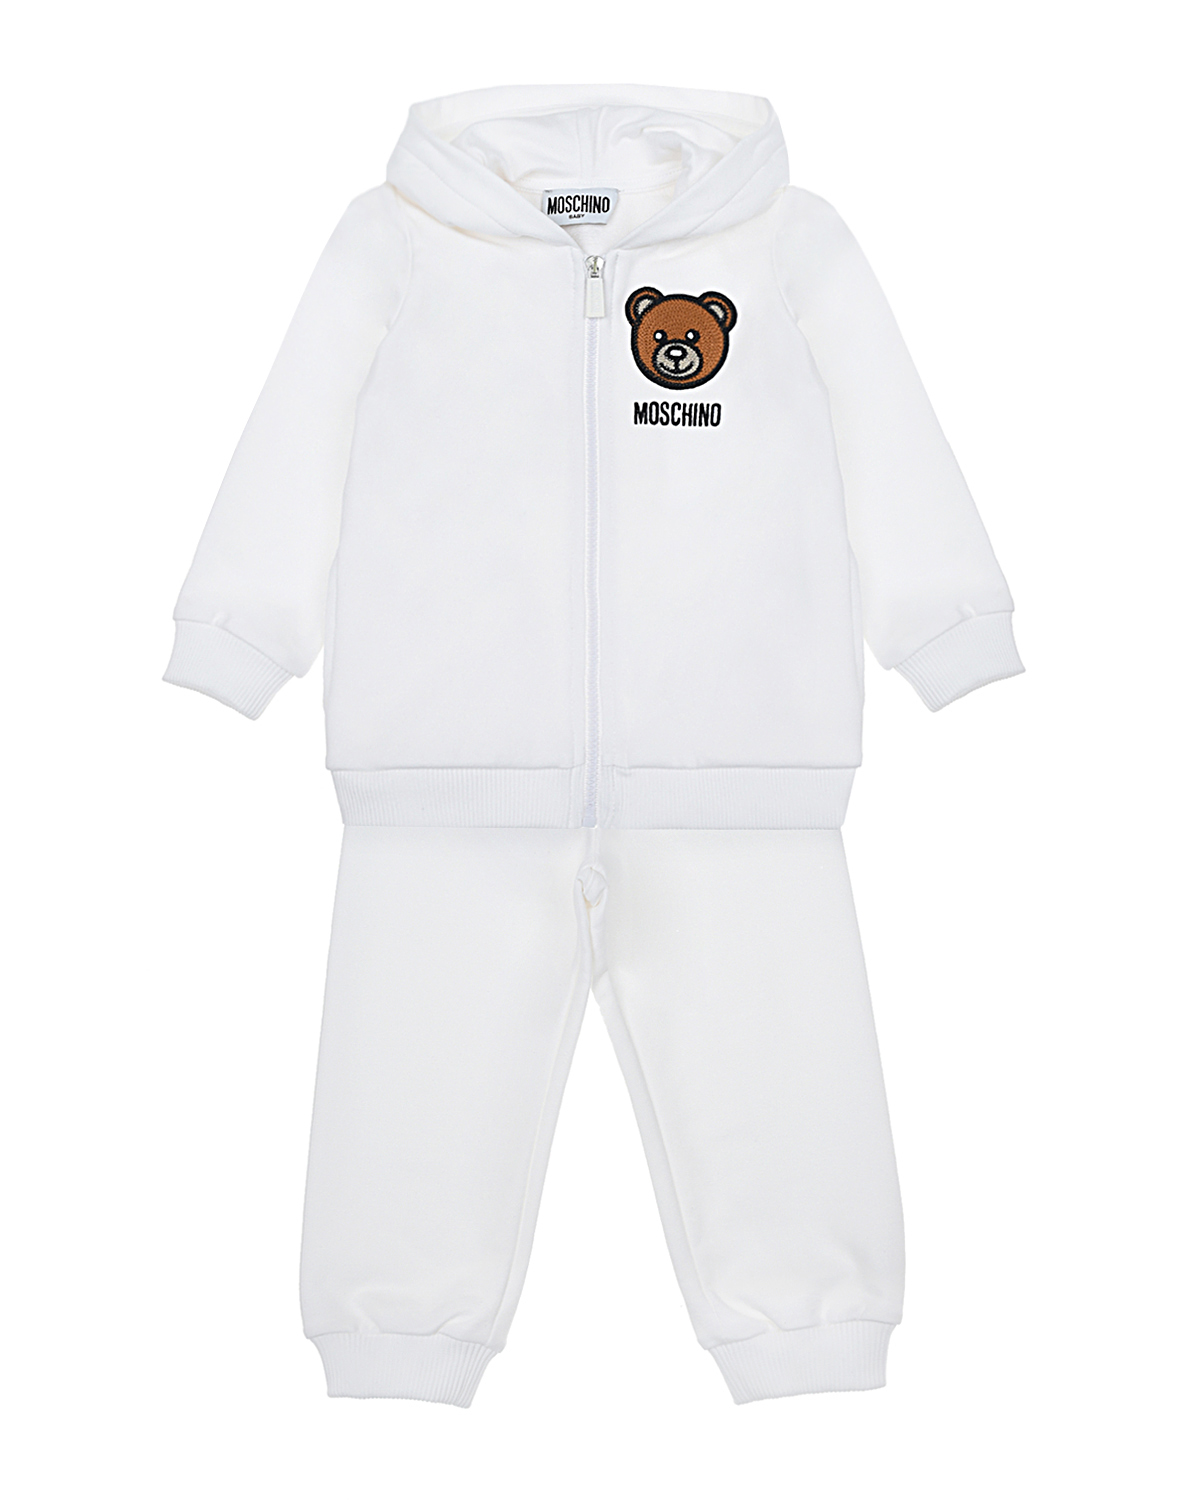 Белый спортивный костюм с принтом "медвежонок" Moschino детский, размер 74 - фото 1